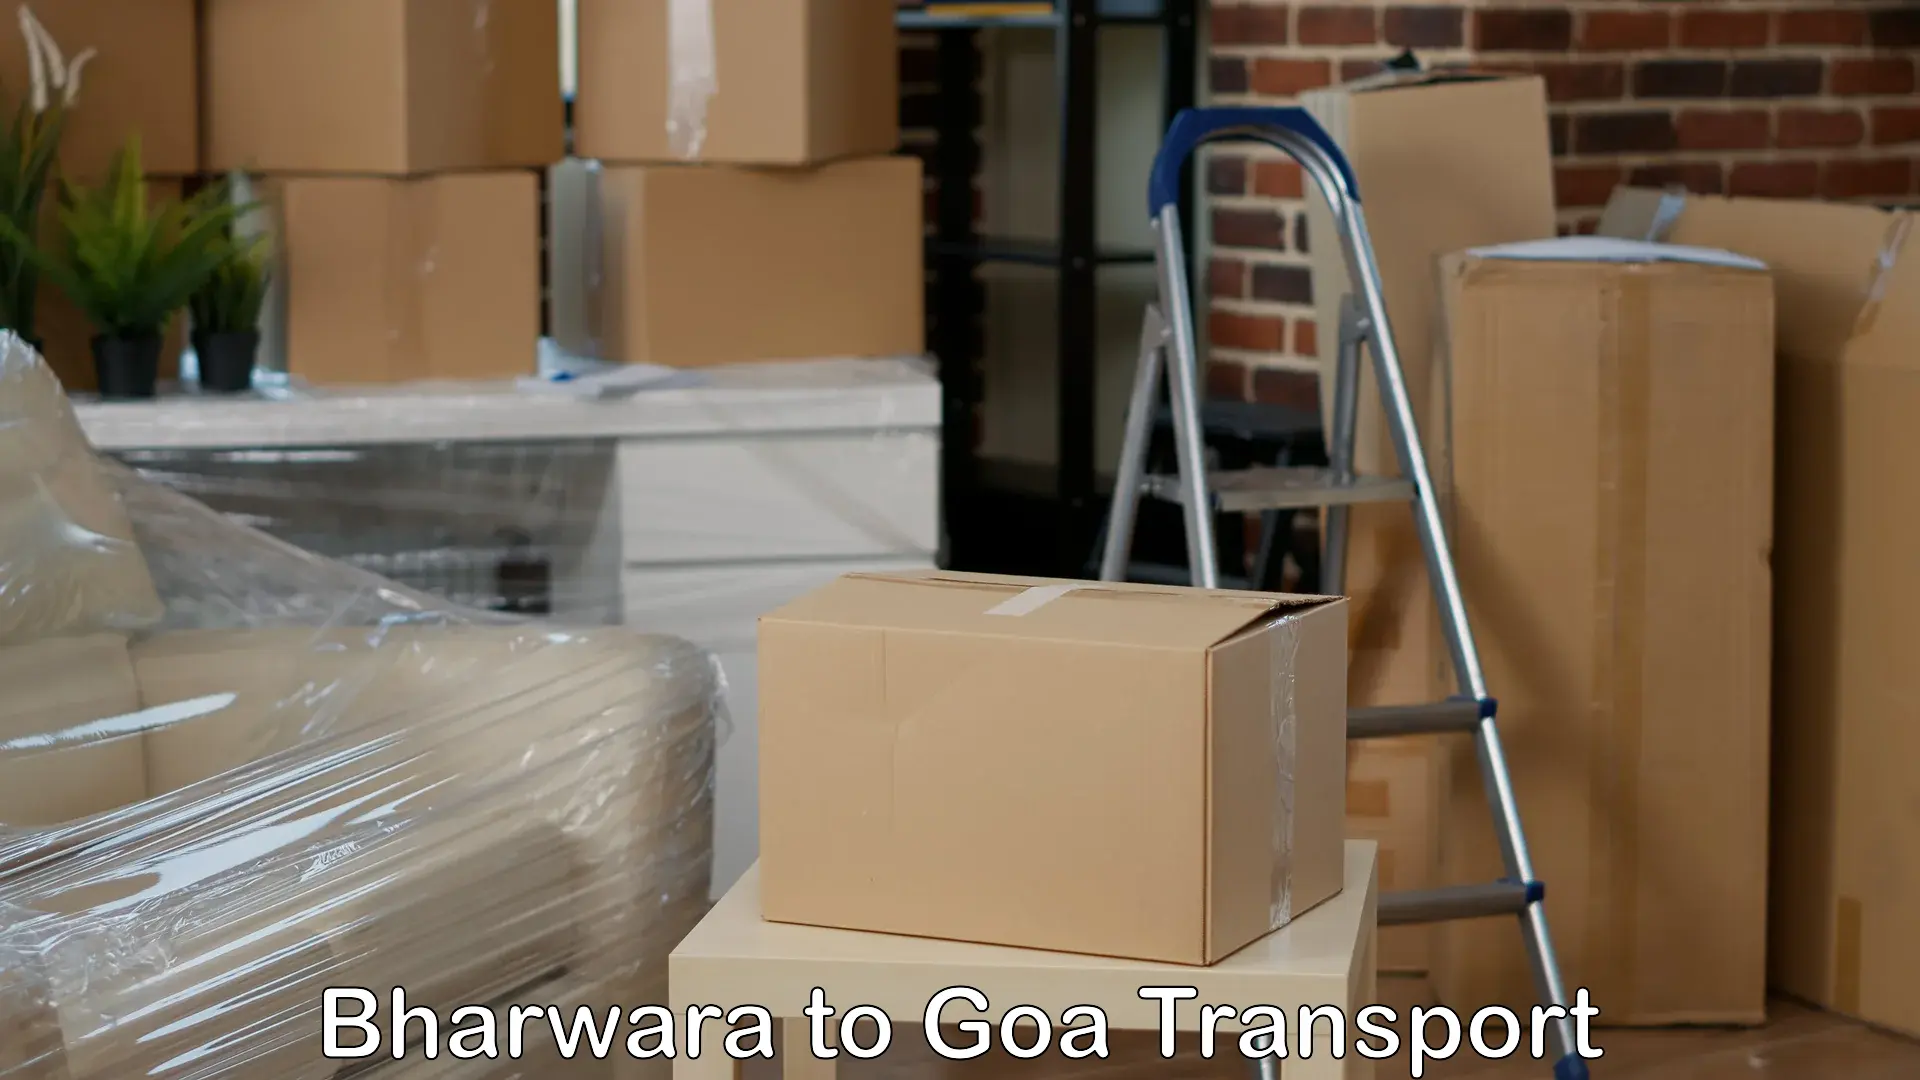 International cargo transportation services Bharwara to Panjim